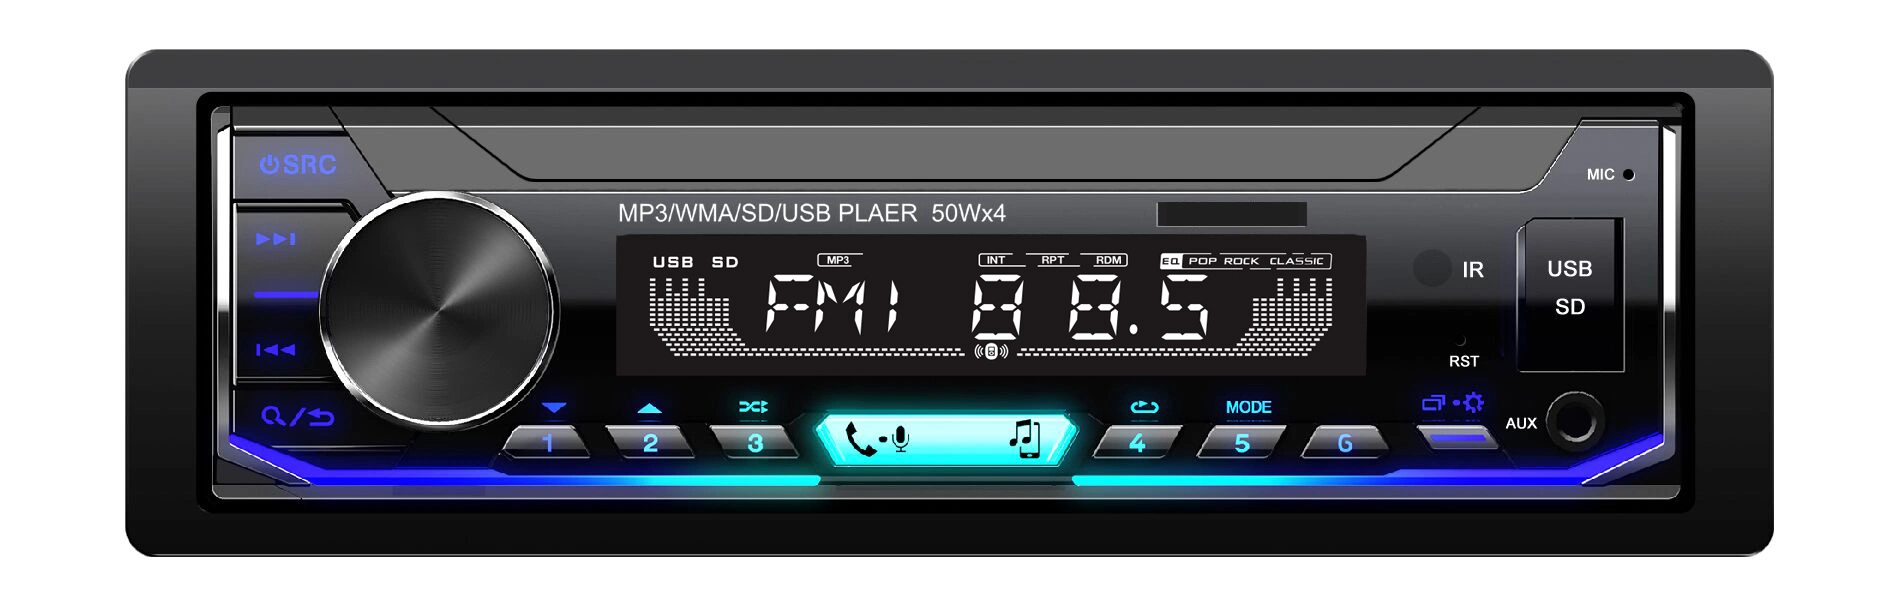 Reproductor de audio MP3 USB Bluetooth para automóvil con radio FM multimedia